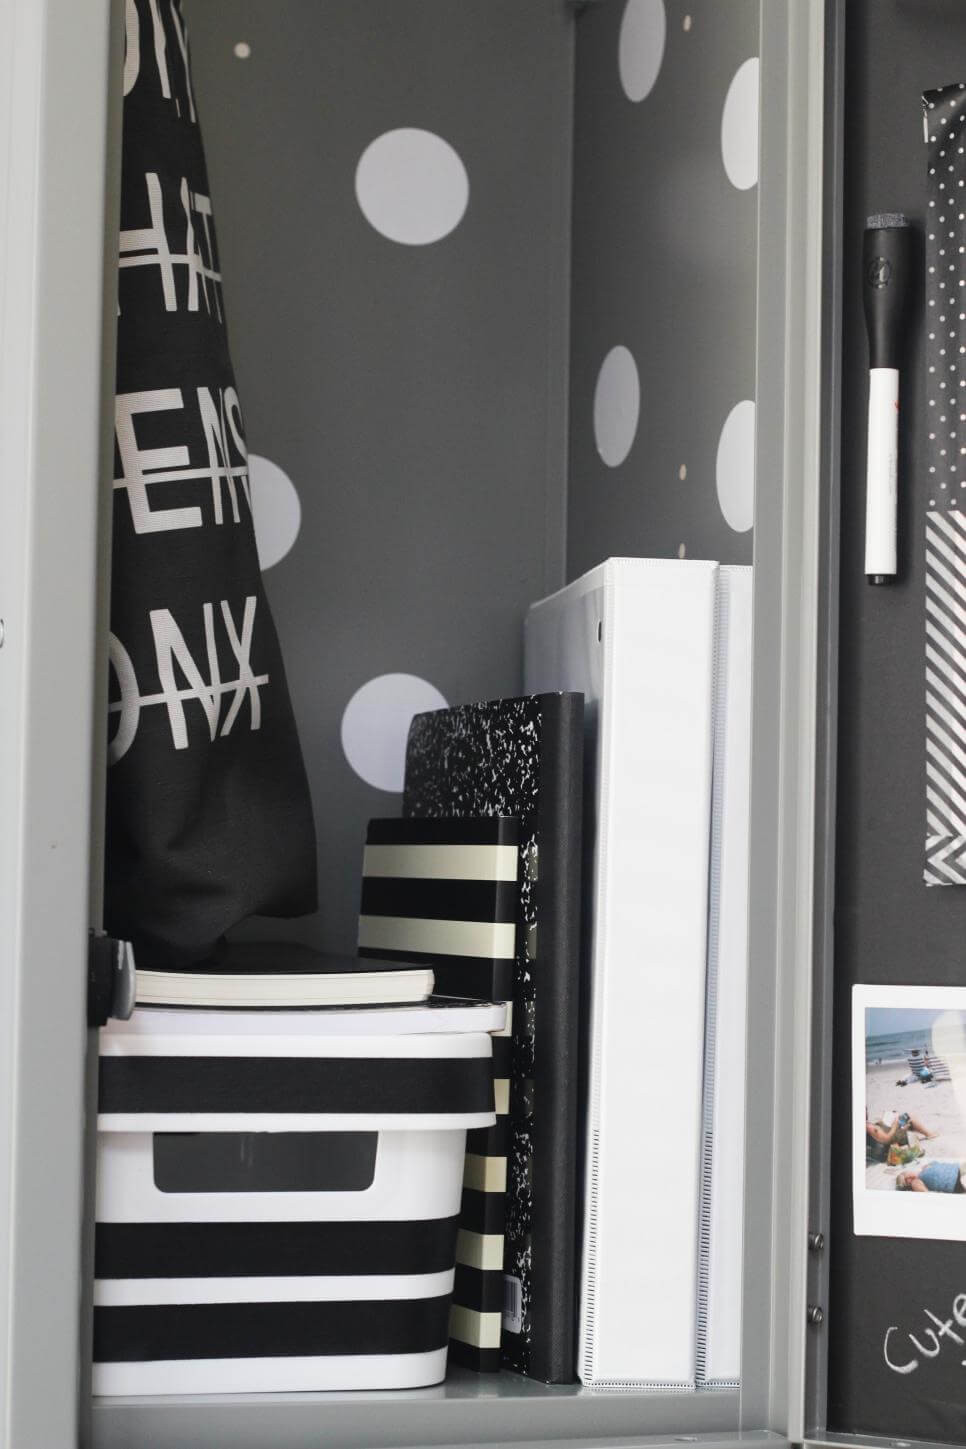 Locker Decorations DIY
 25 DIY Locker Decor Ideas for More Cooler Look